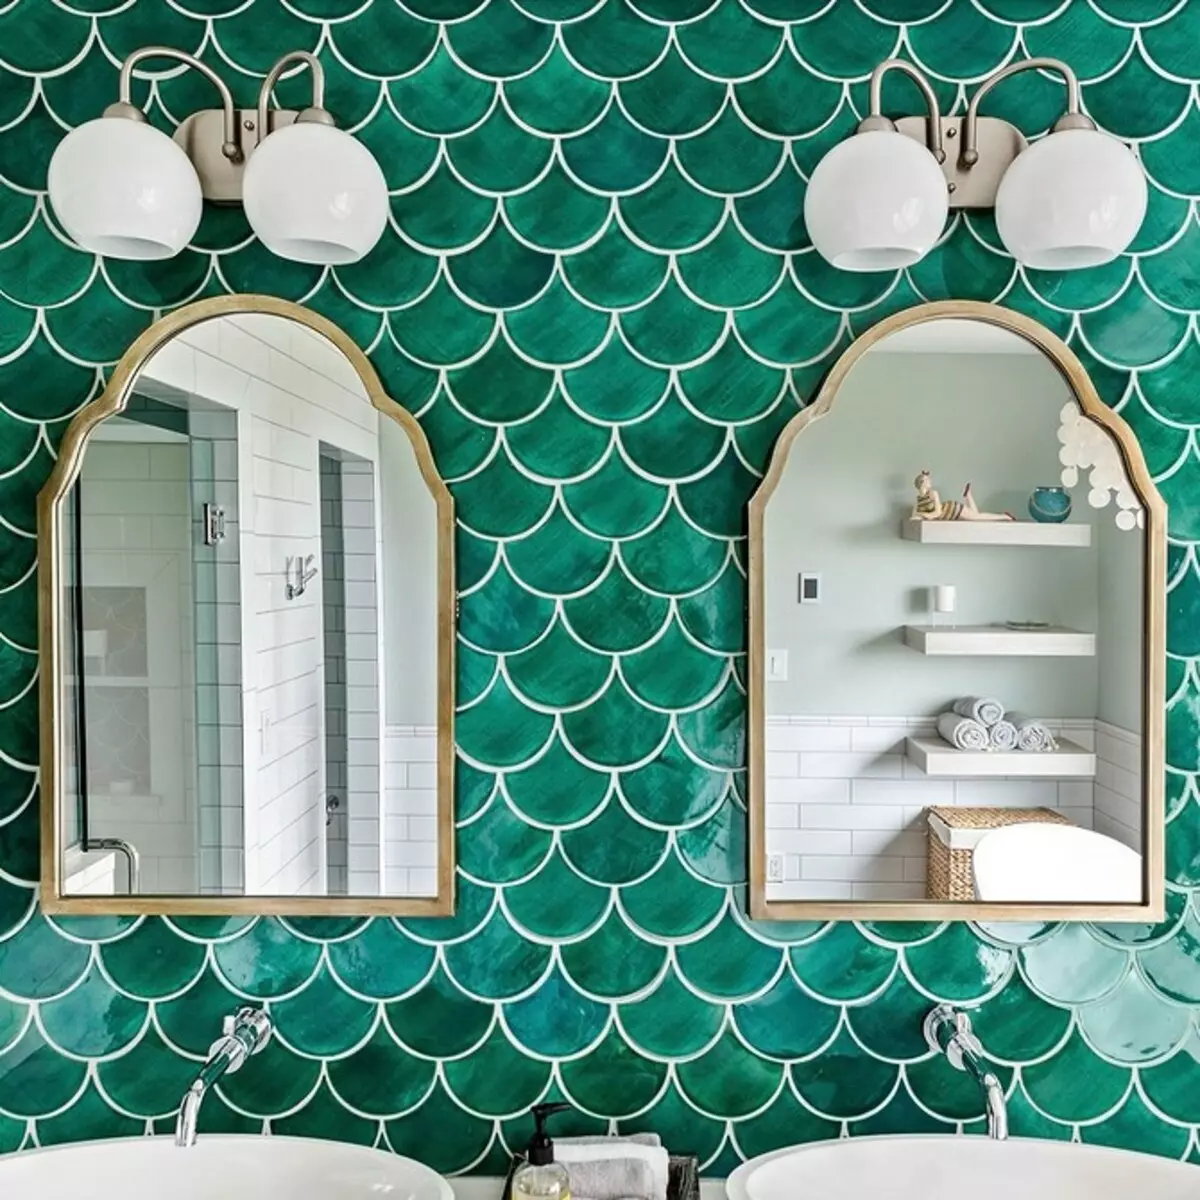 Eleganten in lep: Mozaik pri oblikovanju kopalnice (66 fotografij) 2724_66